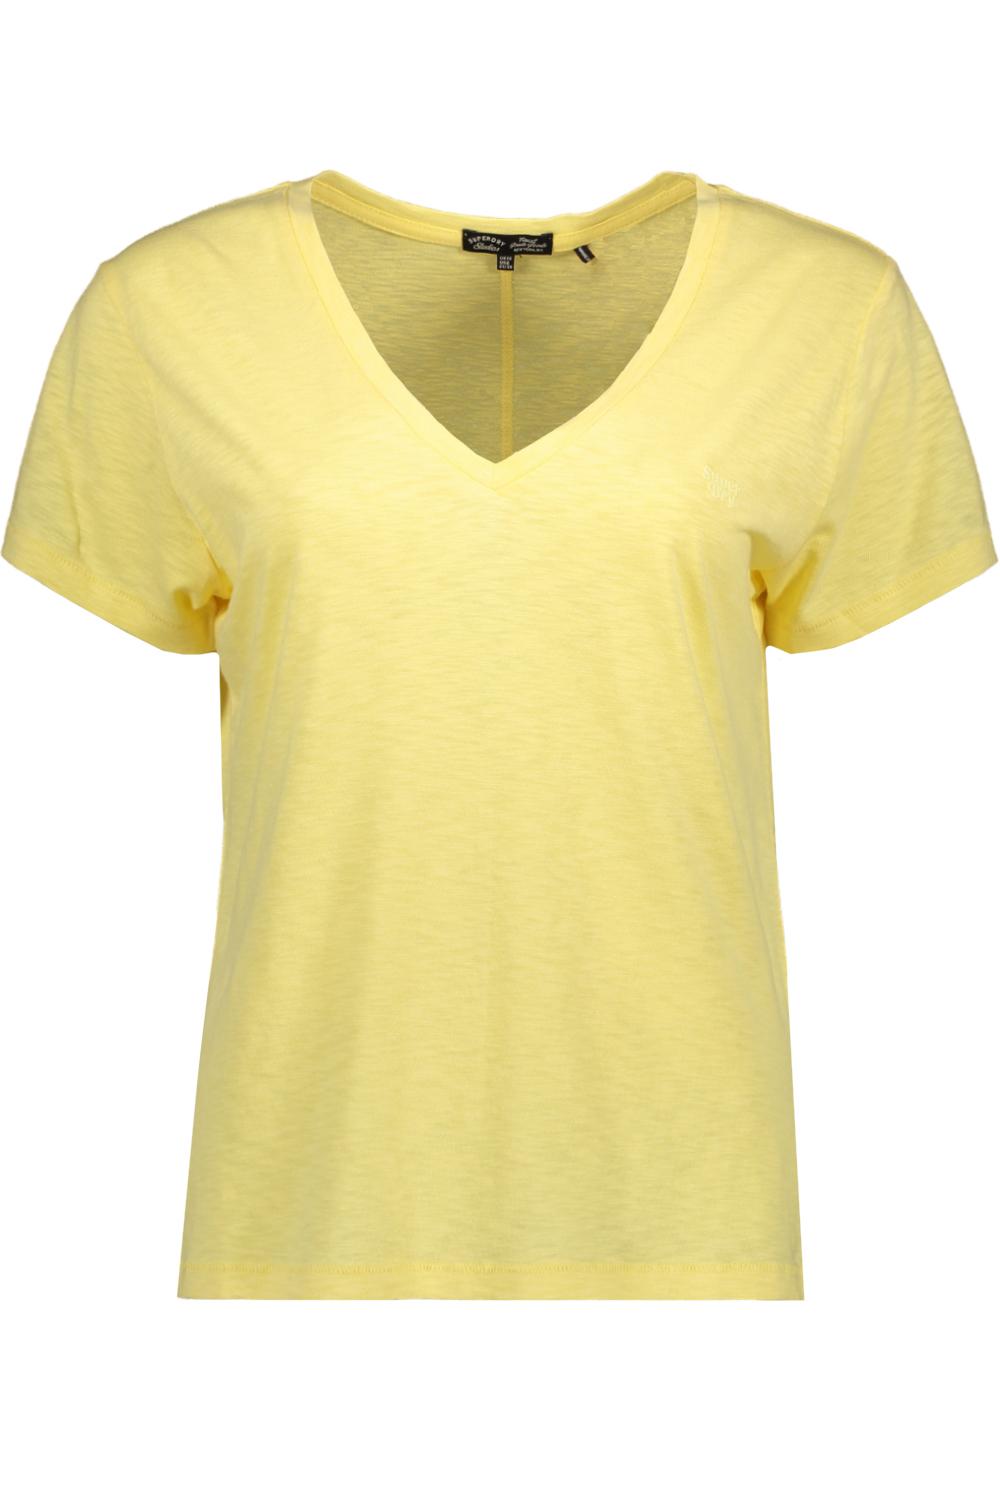 w1011181a tee vee emb slub t-shirt qlc superdry pale yellow studios